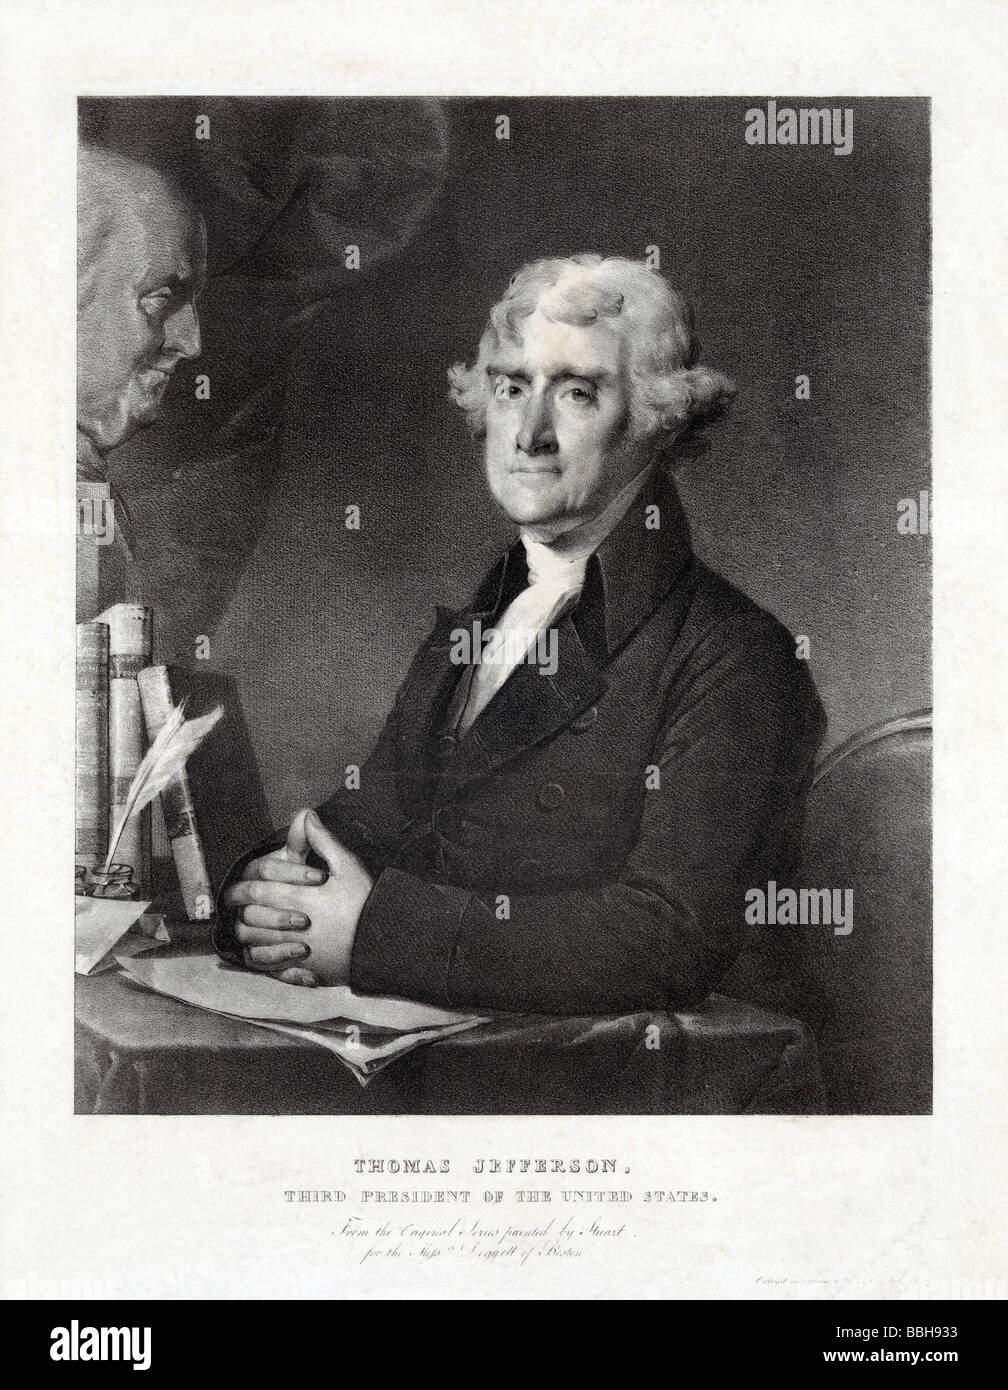 Stampa in verticale circa 1828 di Thomas Jefferson (1743 - 1826), il terzo presidente degli Stati Uniti (1801 - 1809). Foto Stock